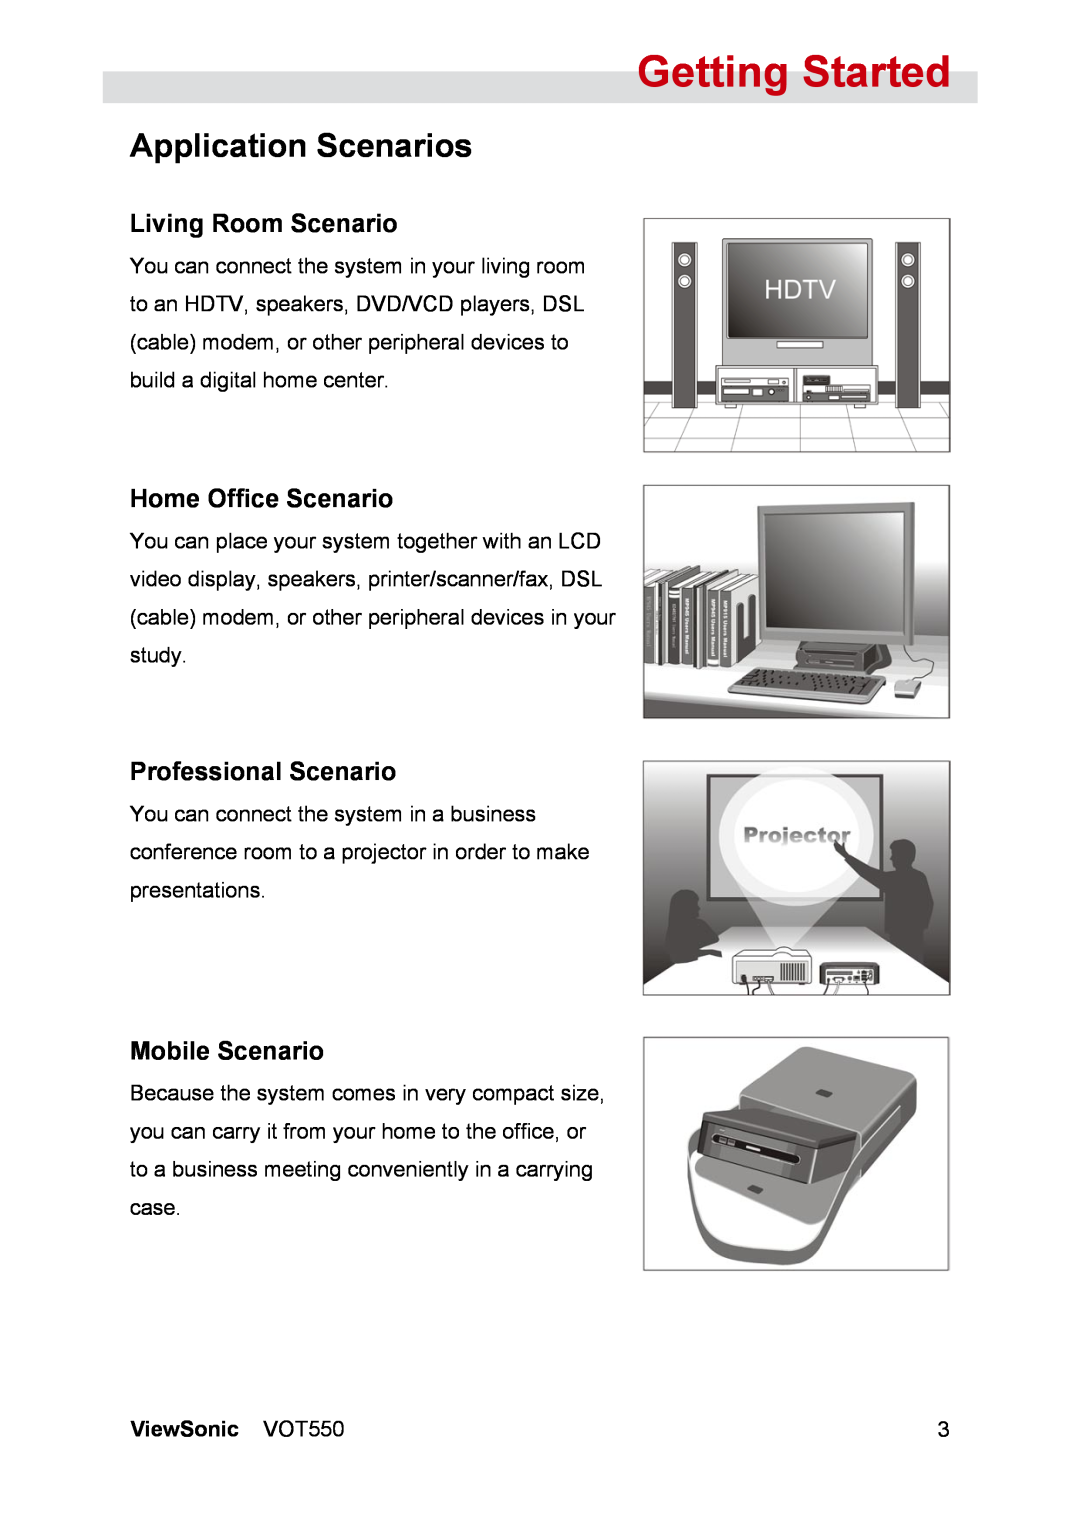 ViewSonic VOT550 Application Scenarios, Living Room Scenario, Home Office Scenario, Professional Scenario, Mobile Scenario 